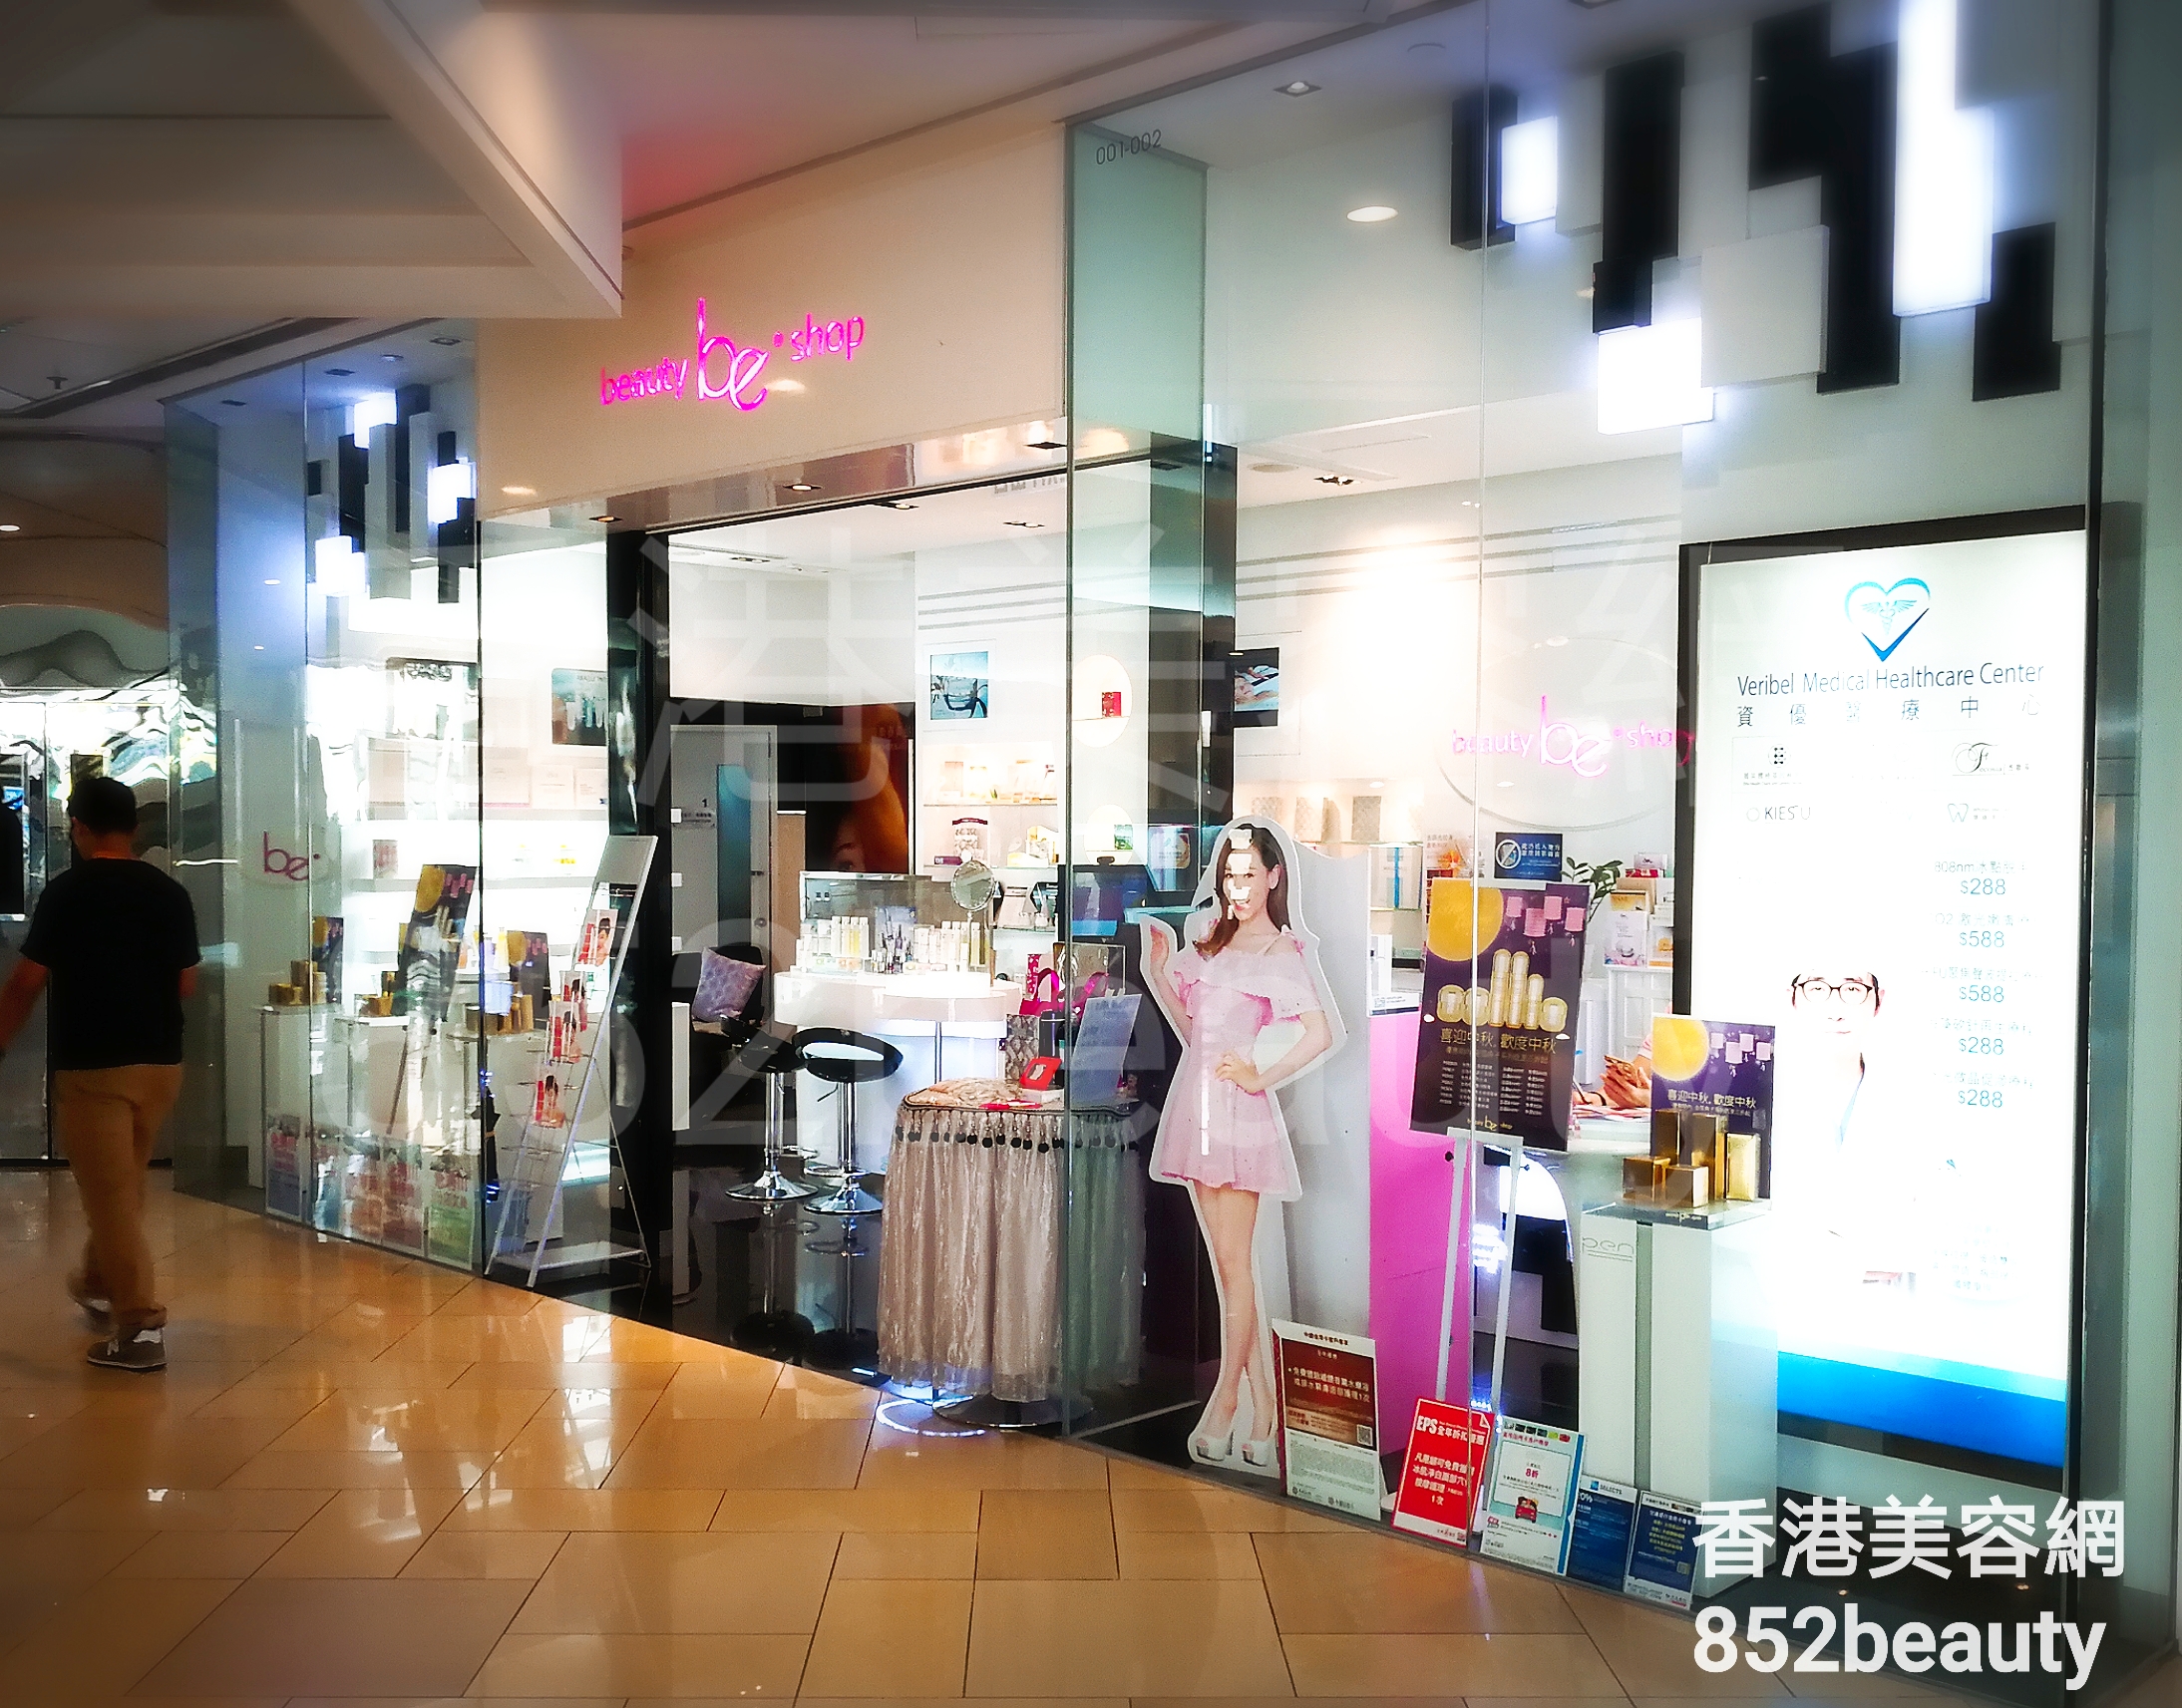 Manicure: be beauty shop (港運城)